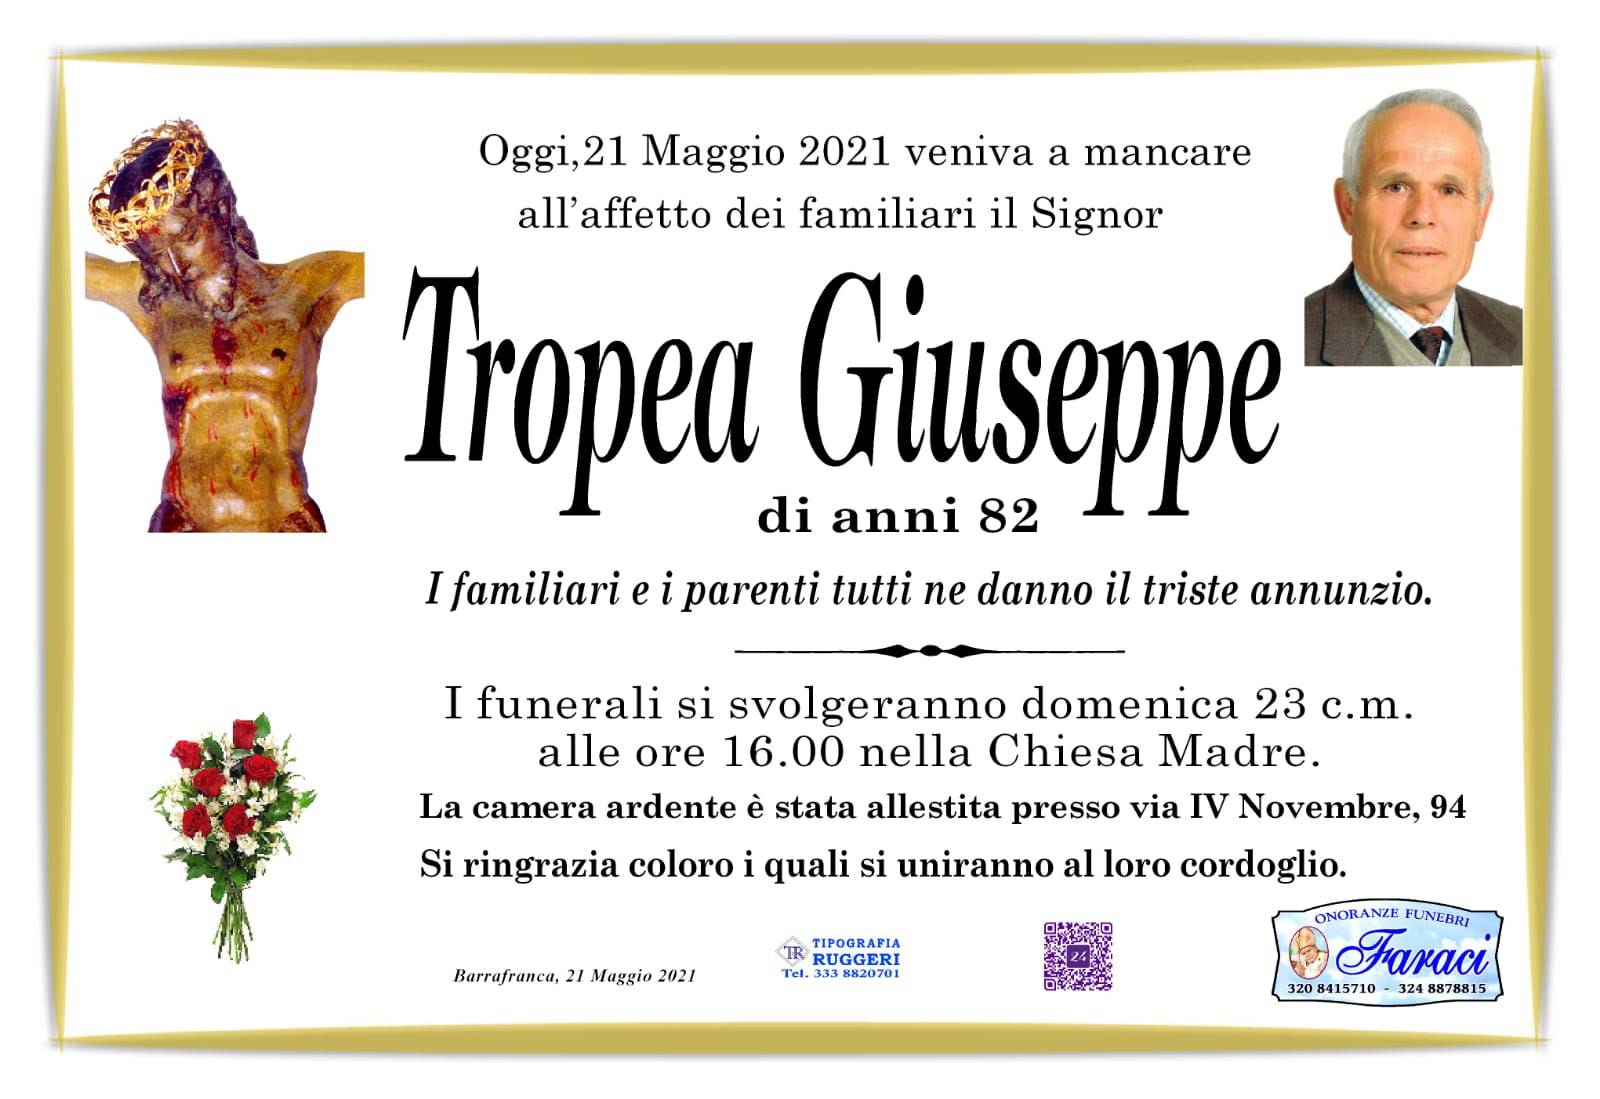 Giuseppe Tropea